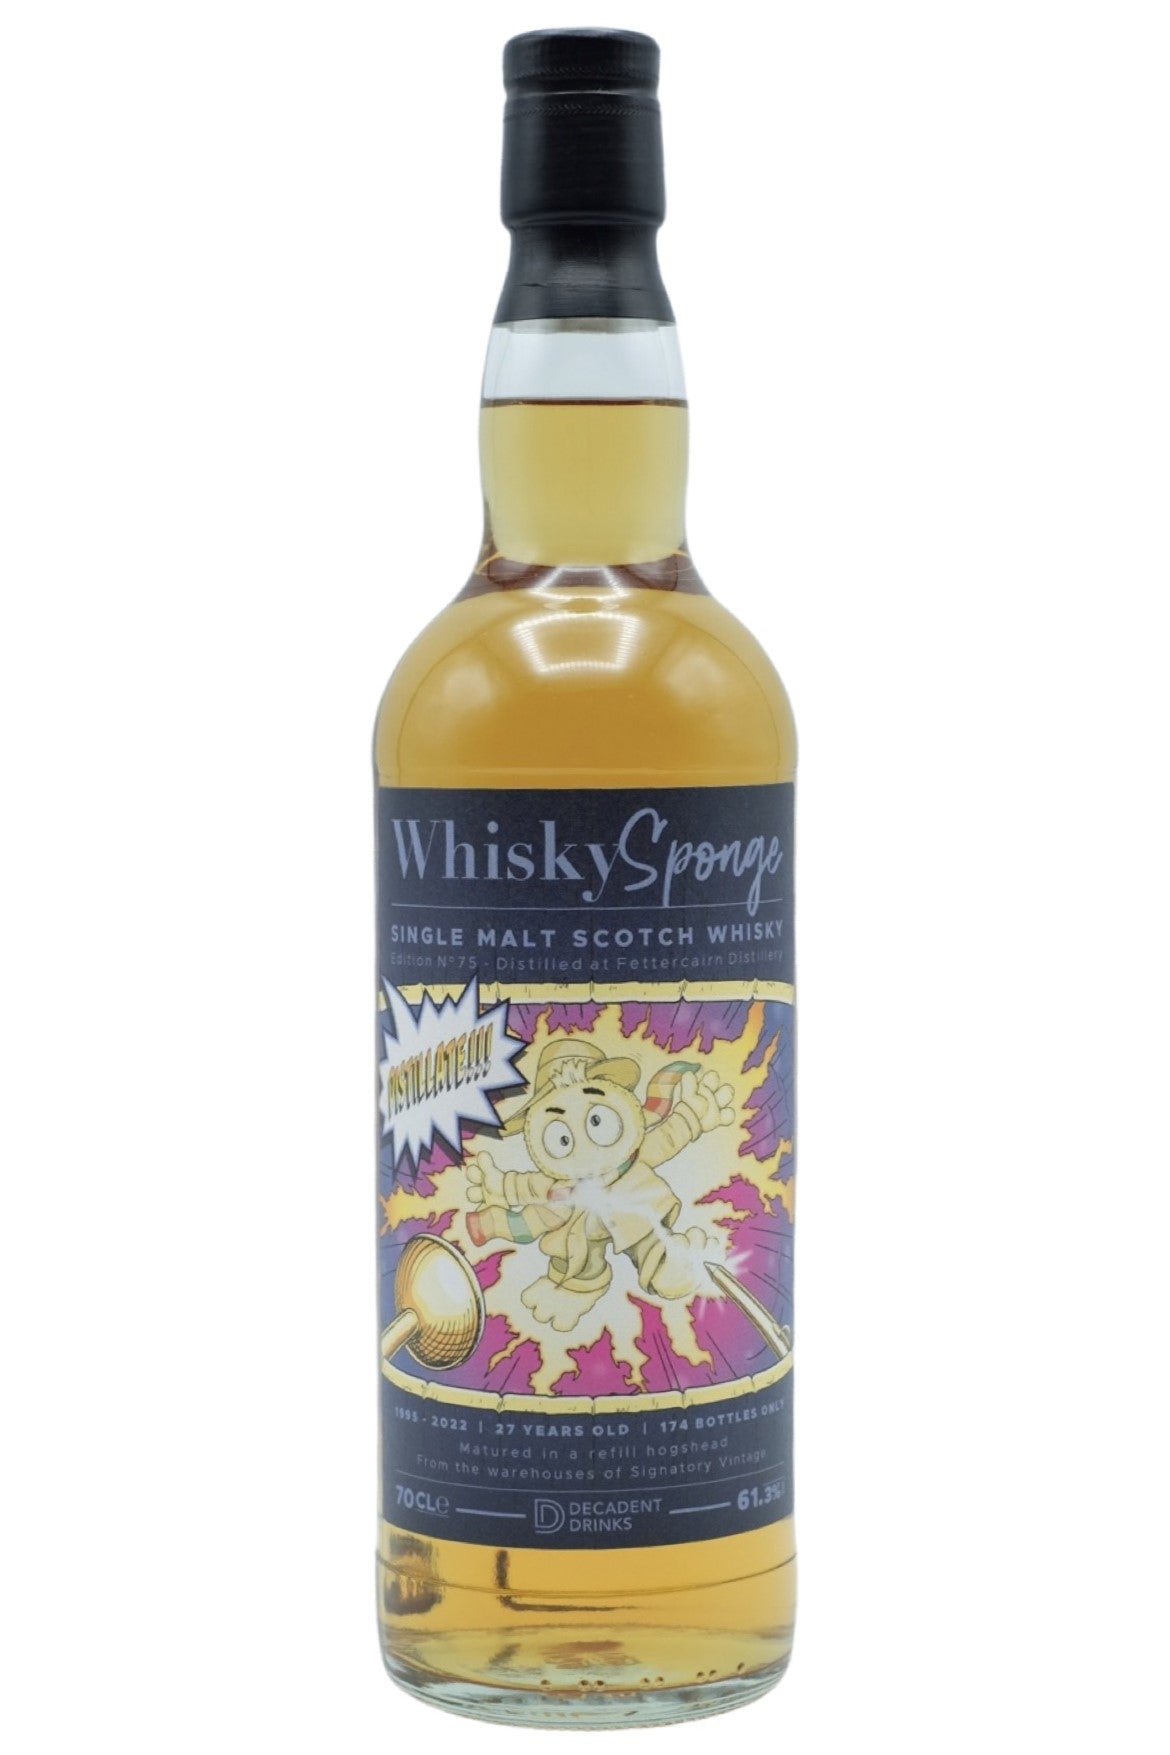 Whisky Sponge Fettercairn 1995